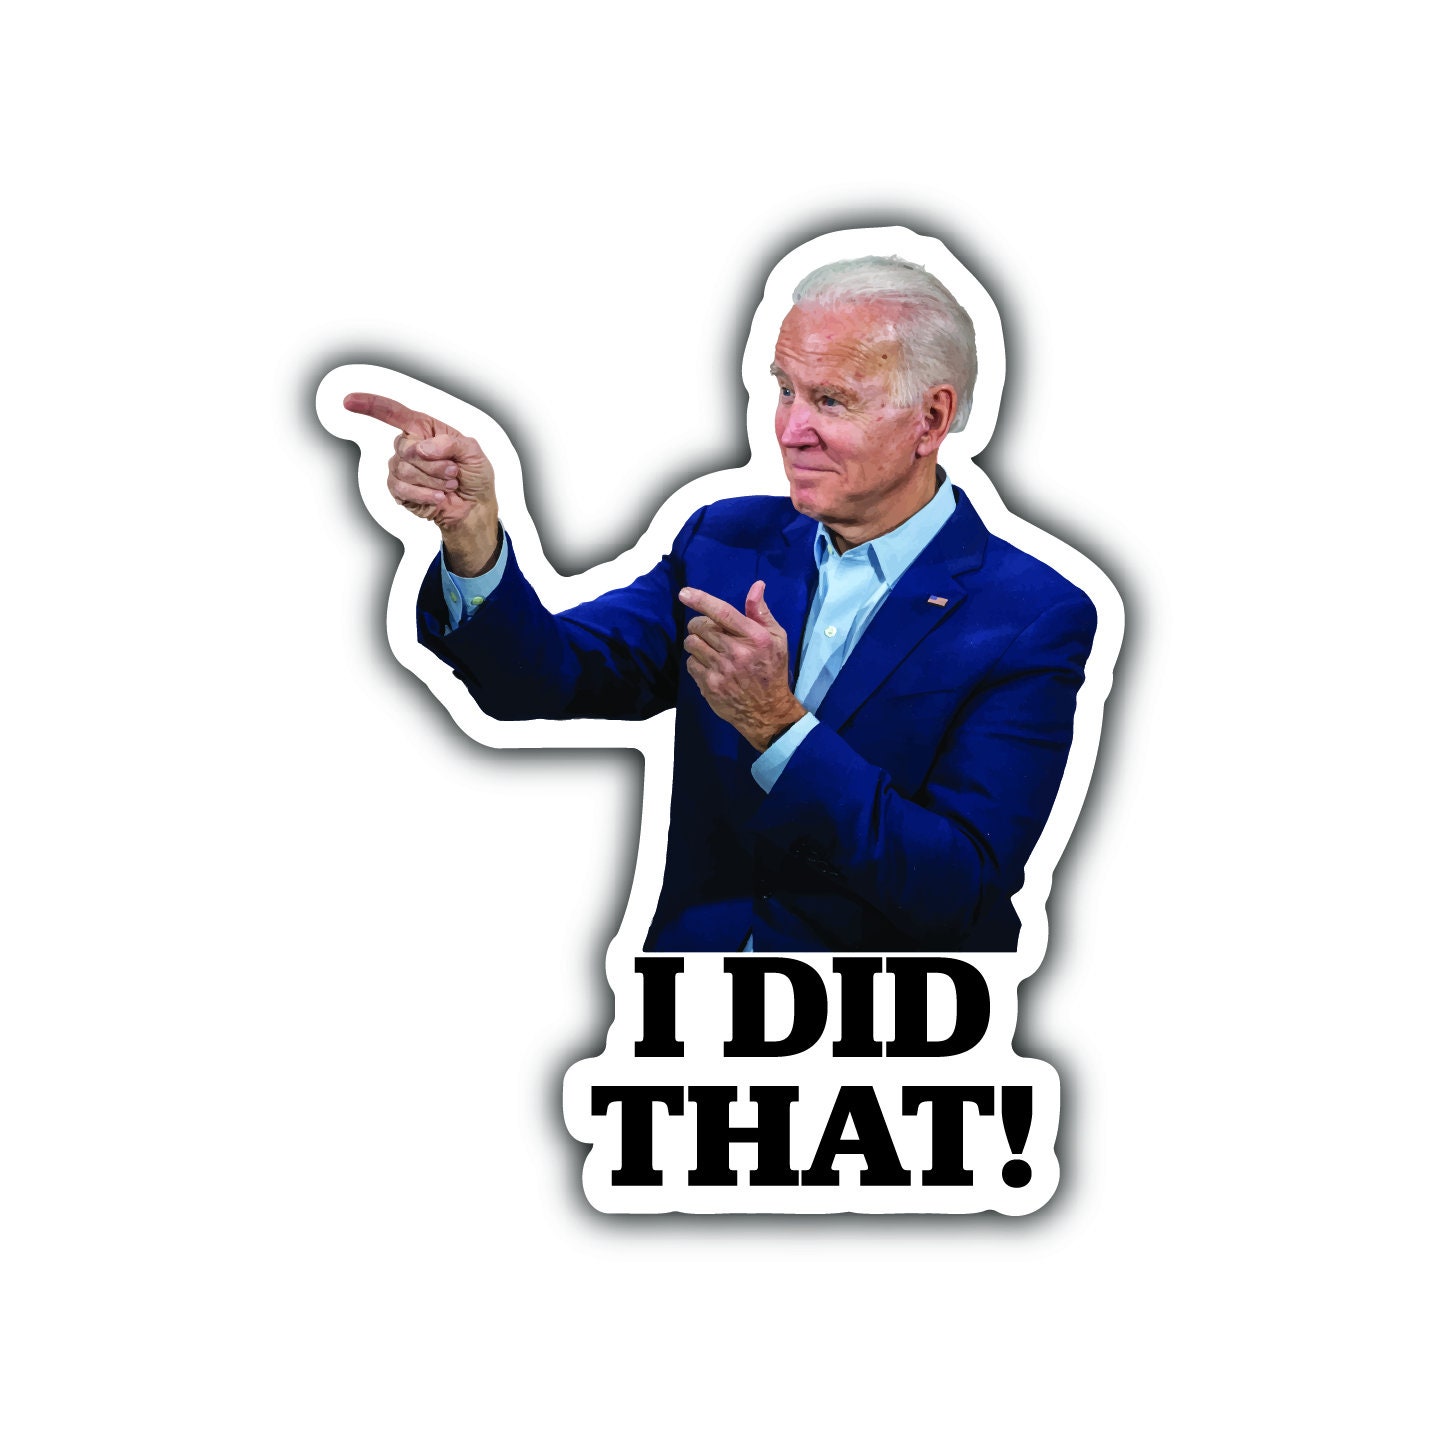 Joe Biden i That Meme 25pcs. Etsy